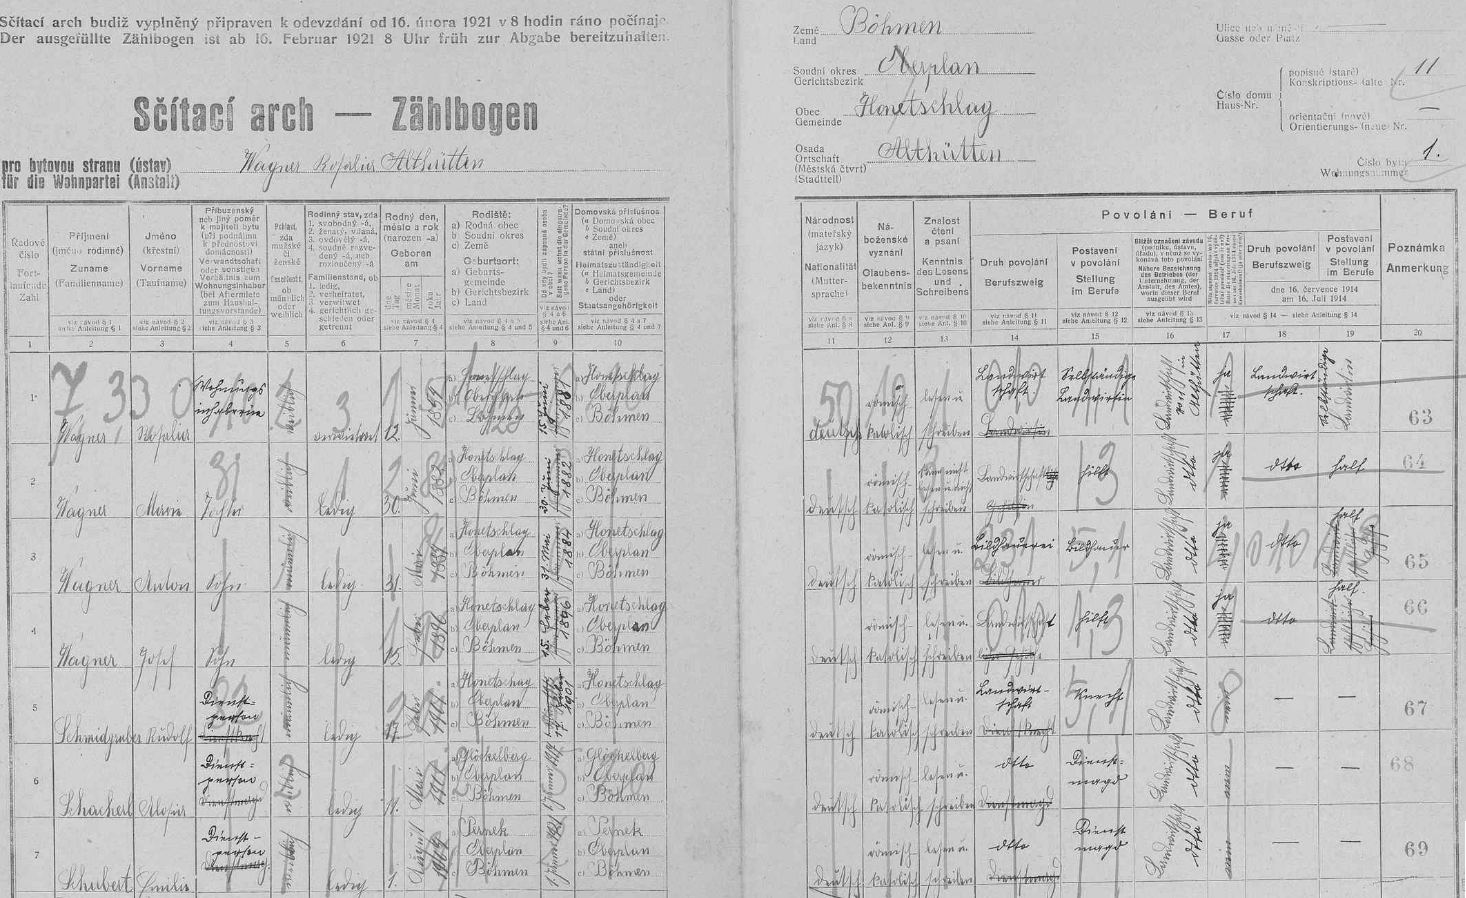 Podle archu sčítání lidu z roku 1921 tehdy žila na statku čp. 11 vdova Rosalia Wagnerová (*1854) s dcerou Marii (*1882), syny Antonem (*1884) a Josefem (*1896), jakož i třemi "služebnými osobami"